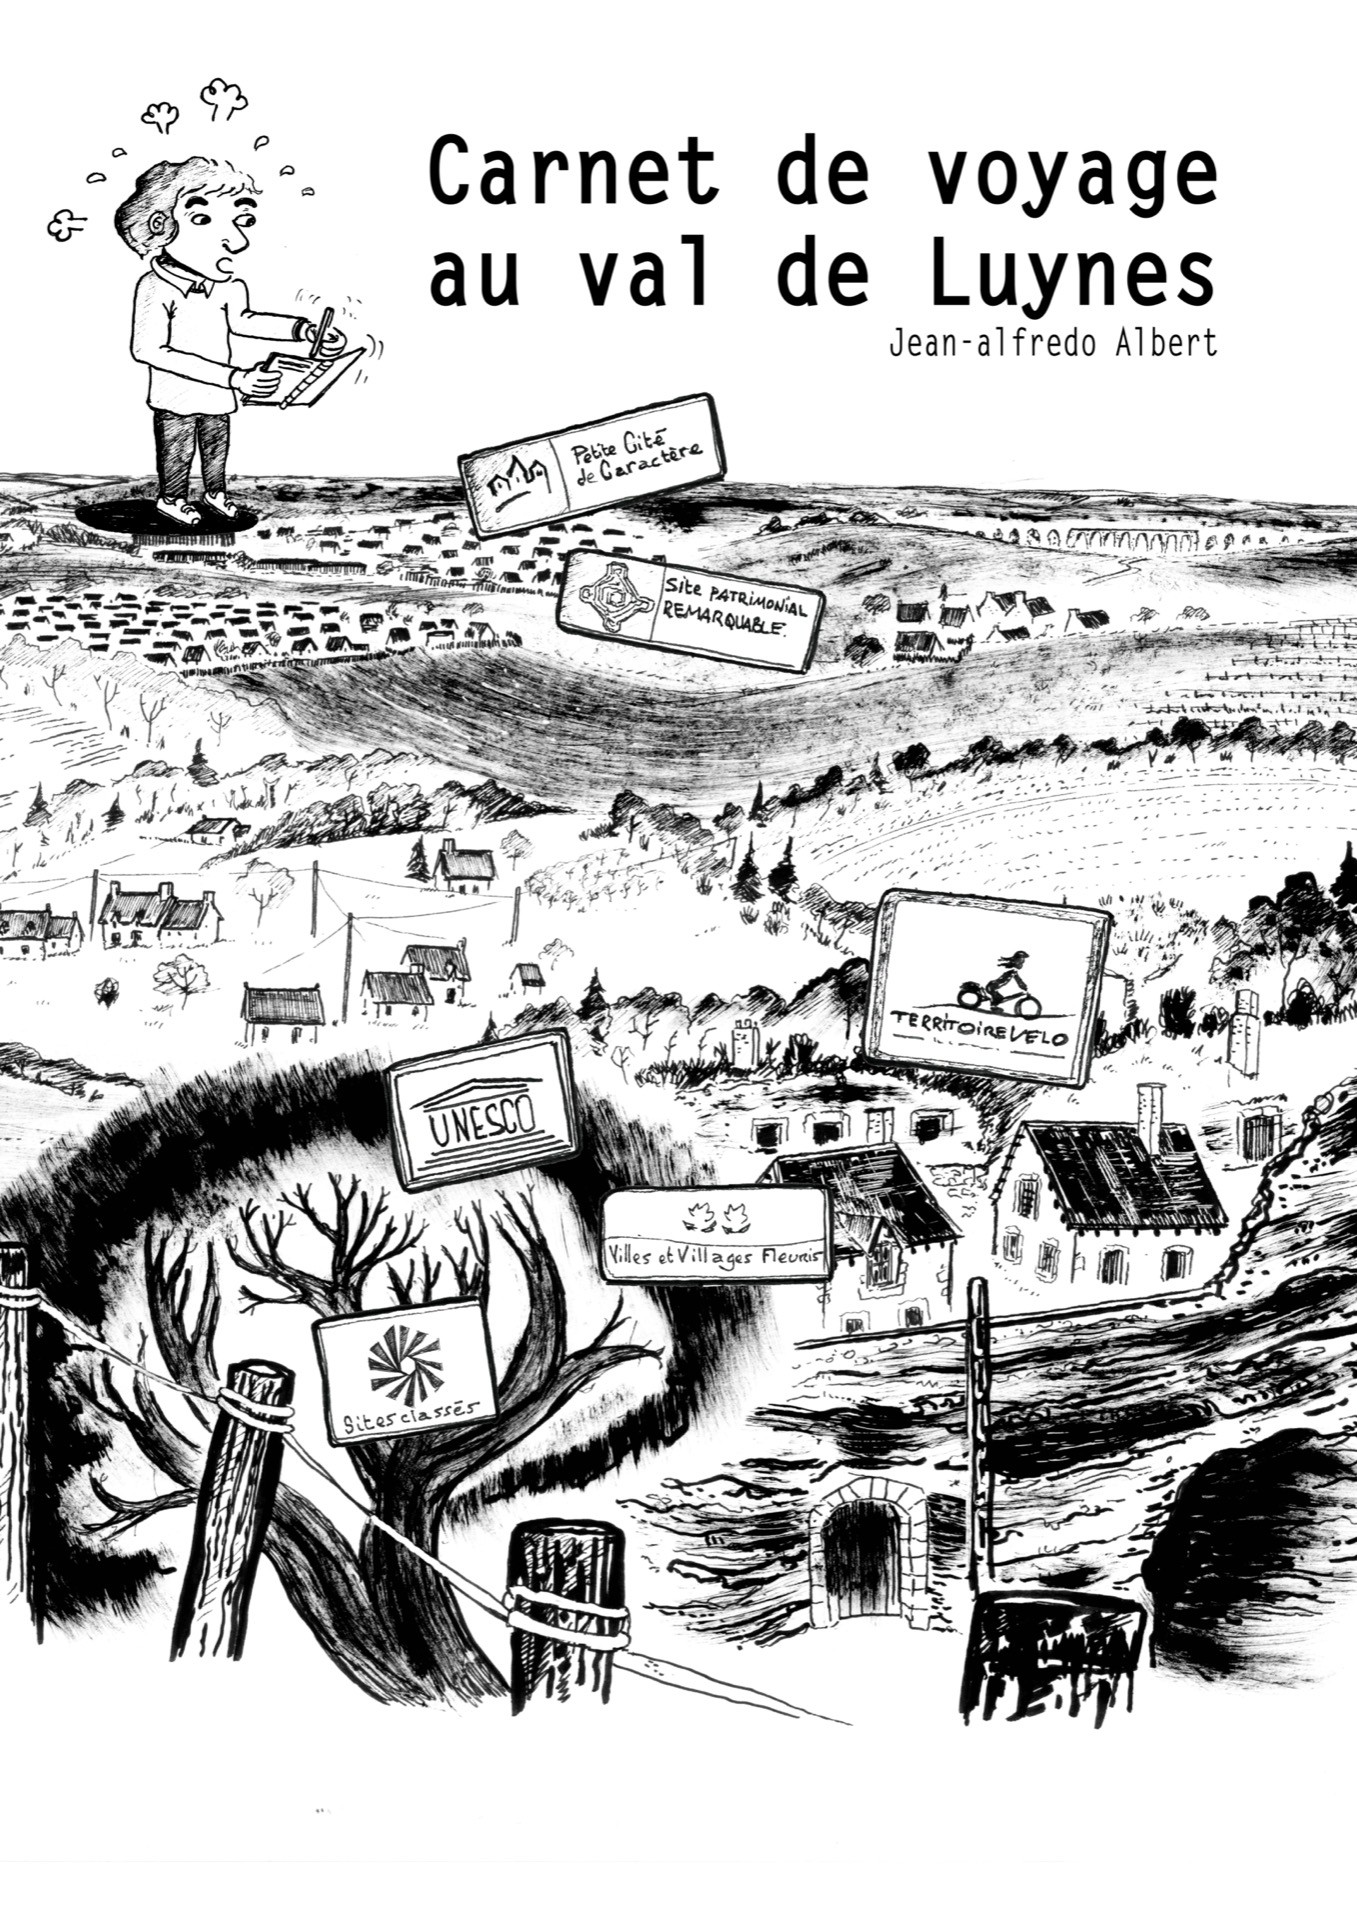 Jean-Alfredo.com - Carnet de voyage au val de Luynes - Résidence artistique sur la commune de Luynes (territoire UNESCO val de Loire) pour mettre en récit les paysages